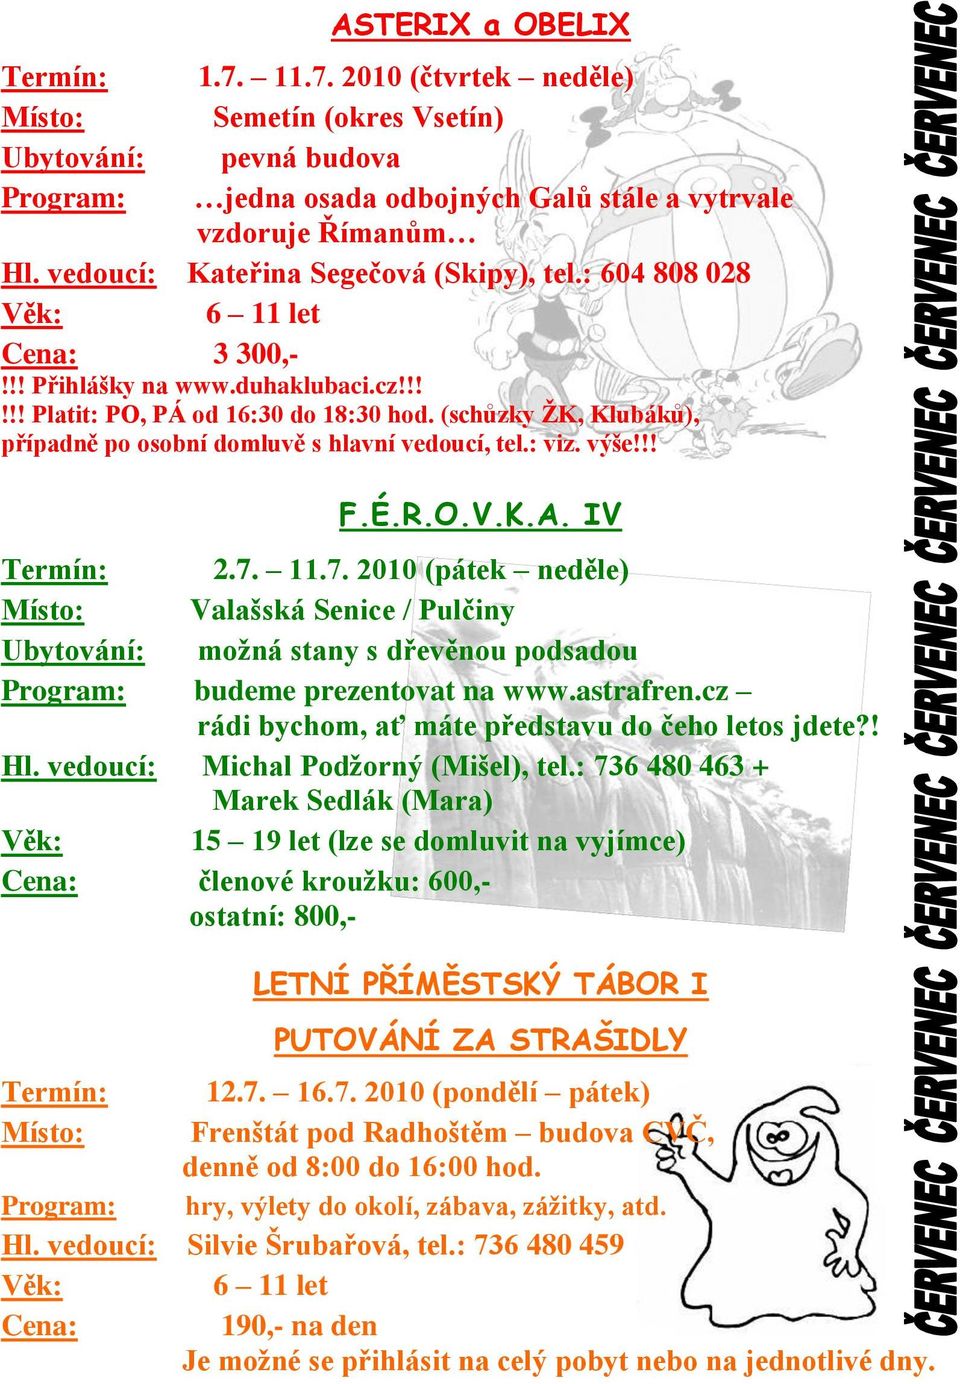 !! F.É.R.O.V.K.A. IV 2.7. 11.7. 2010 (pátek neděle) Valašská Senice / Pulčiny moţná stany s dřevěnou podsadou Program: budeme prezentovat na www.astrafren.